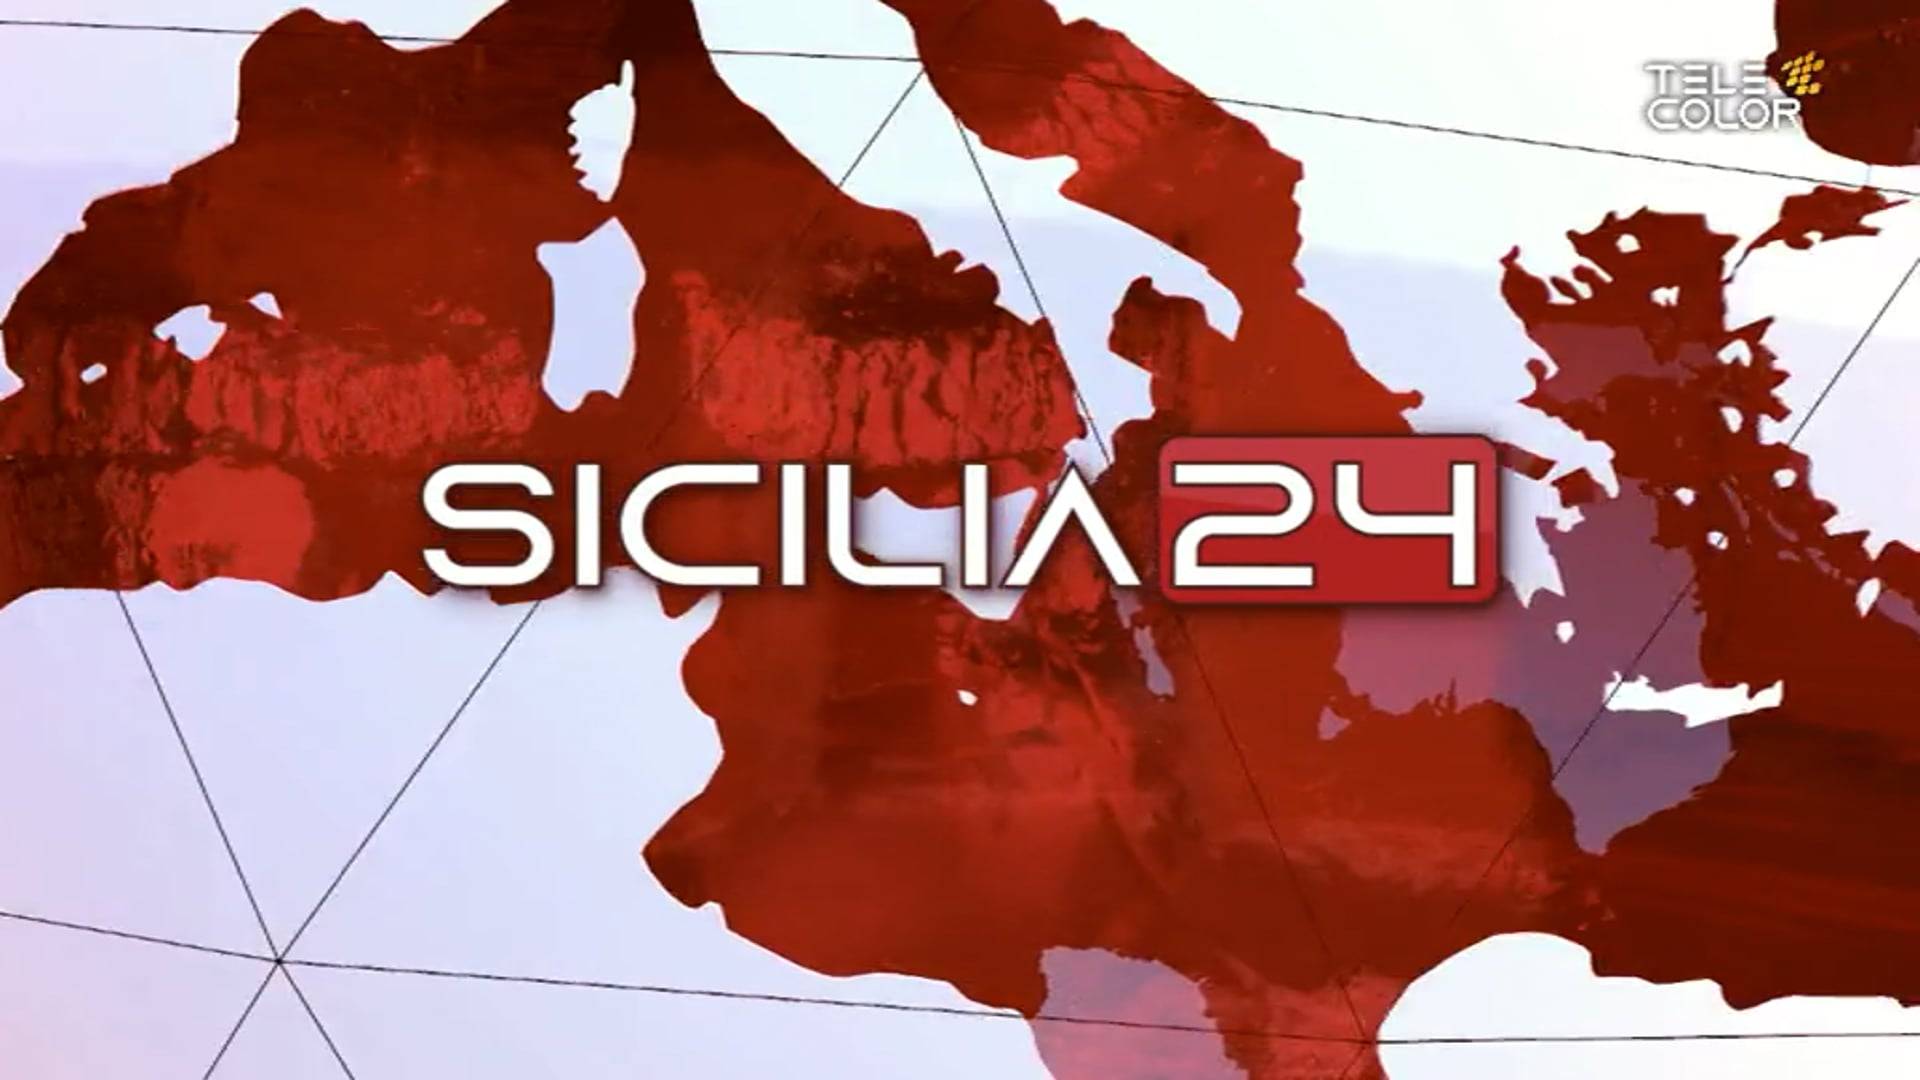 sicilia24-rassegna-stampa-17-aprile-2022-vimeo-thumbnail.jpg